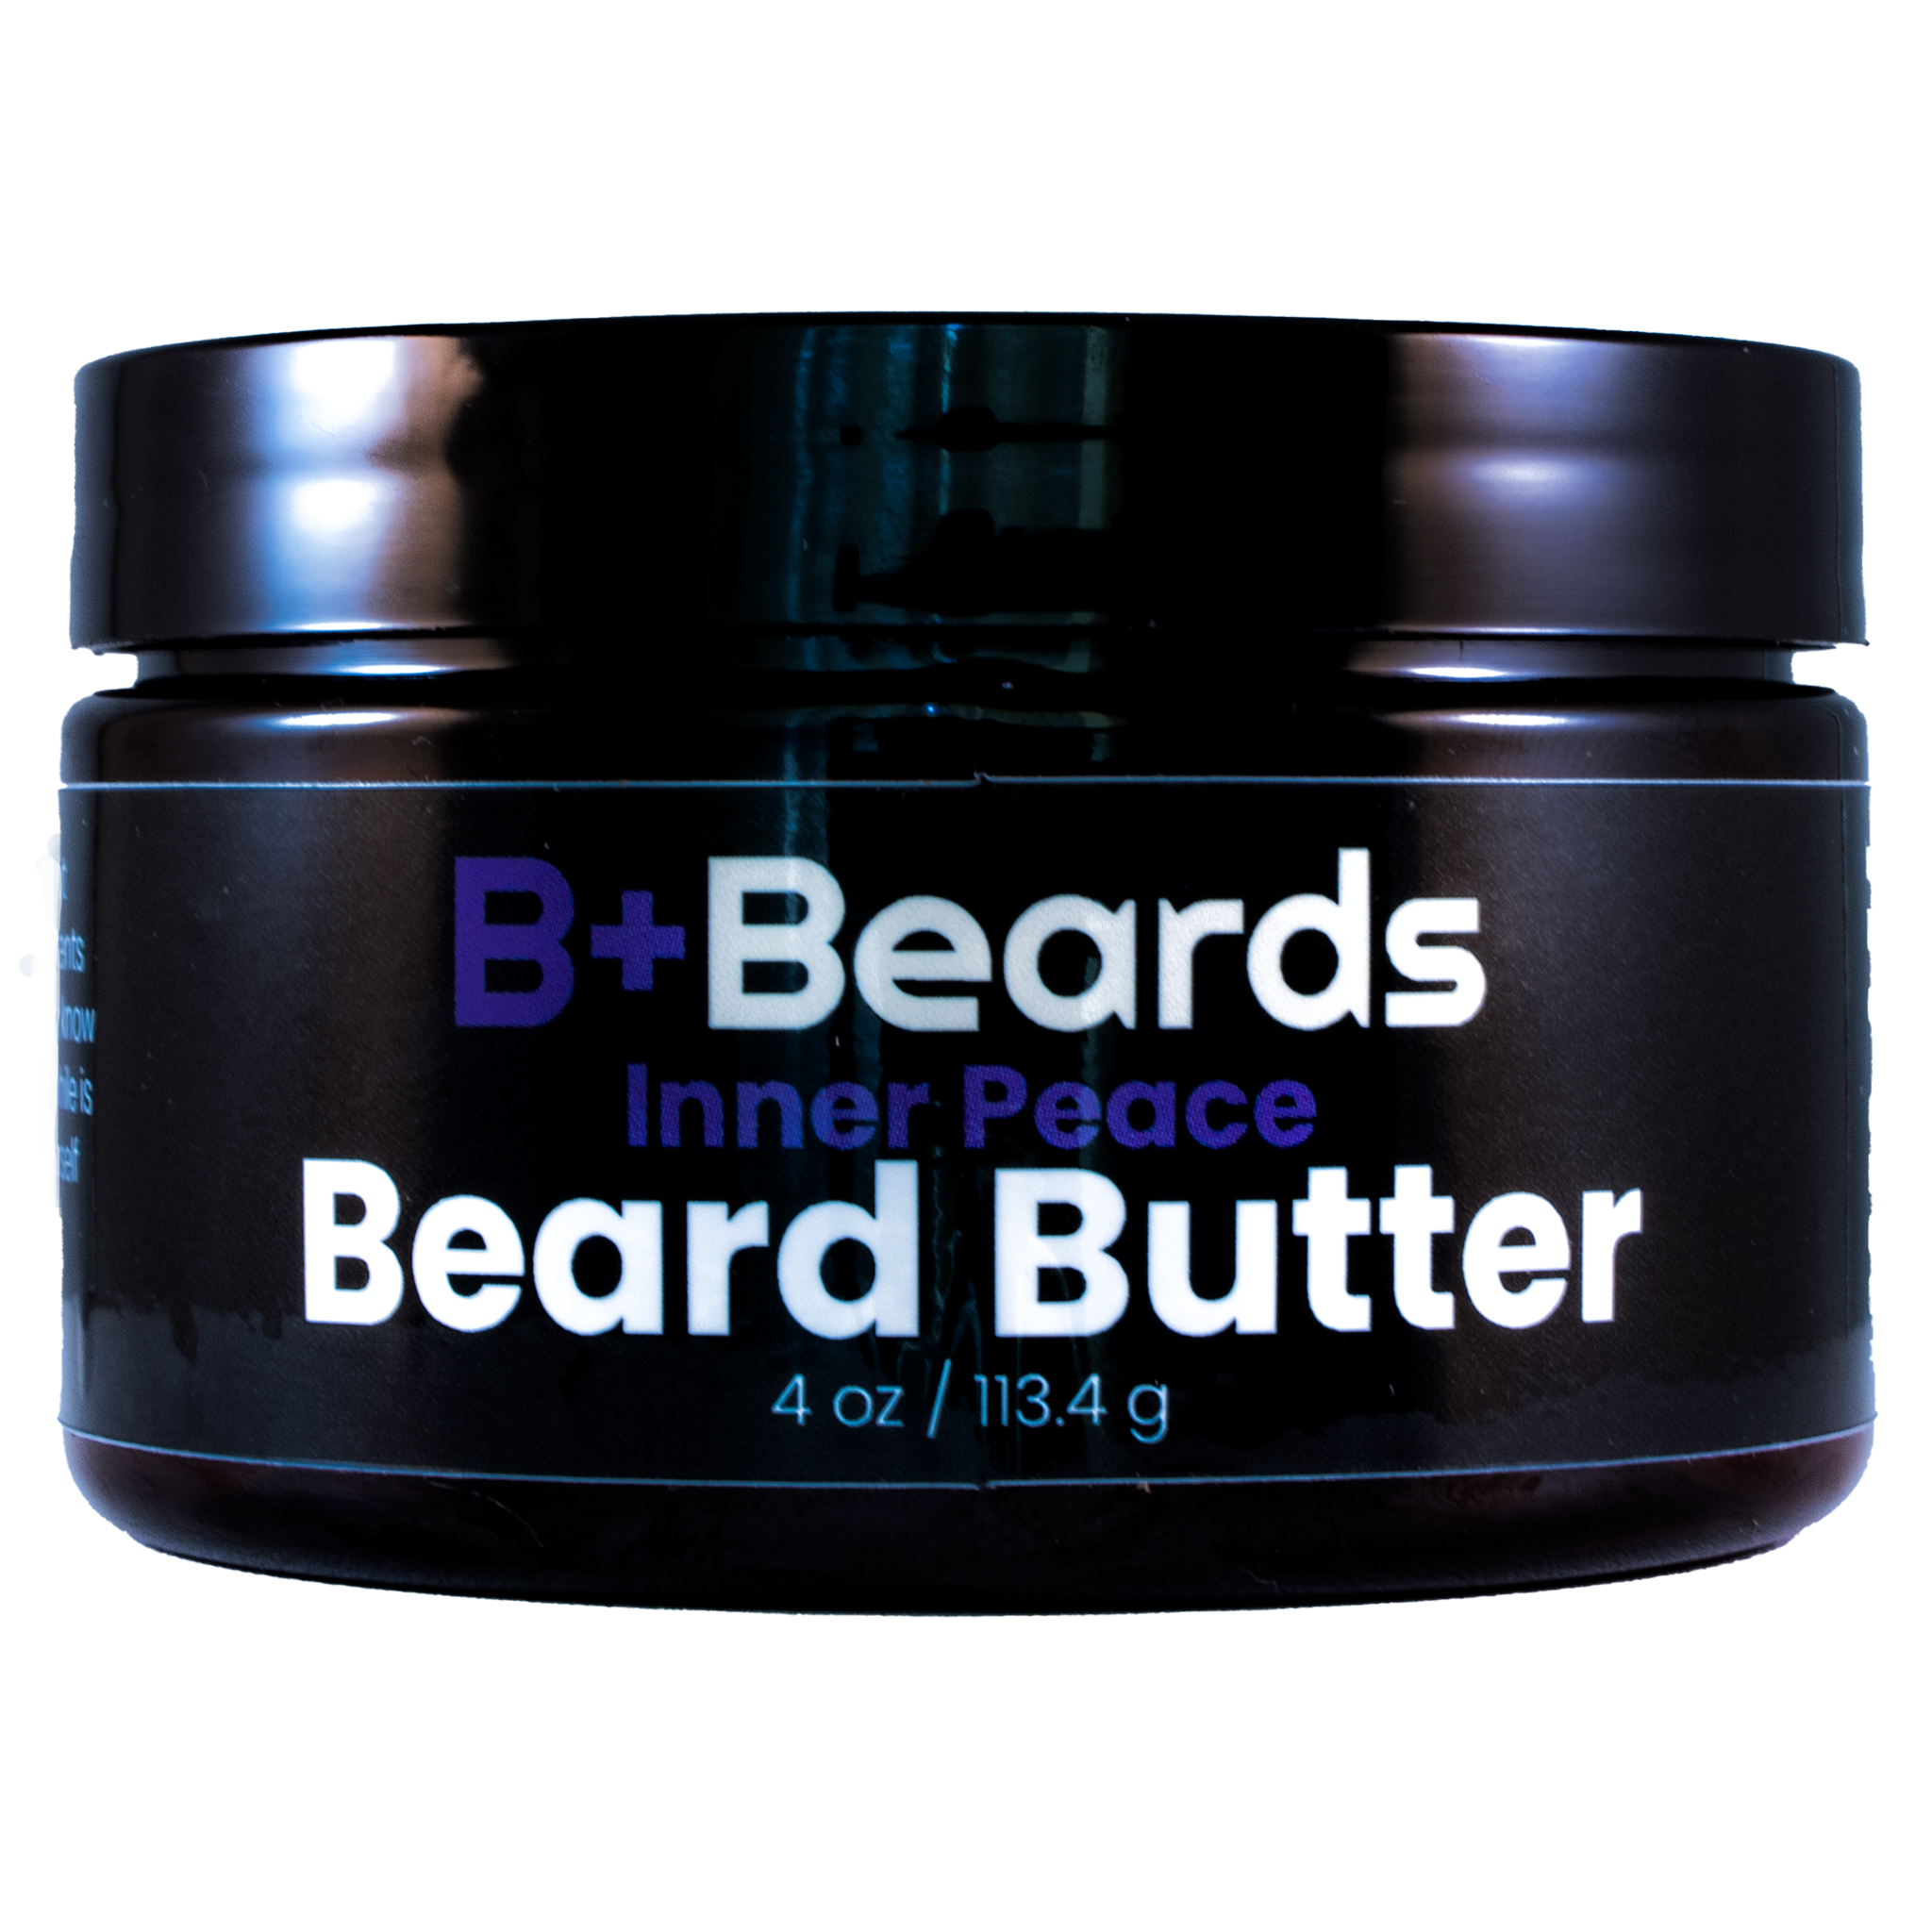 Inner Peace Beard Butter